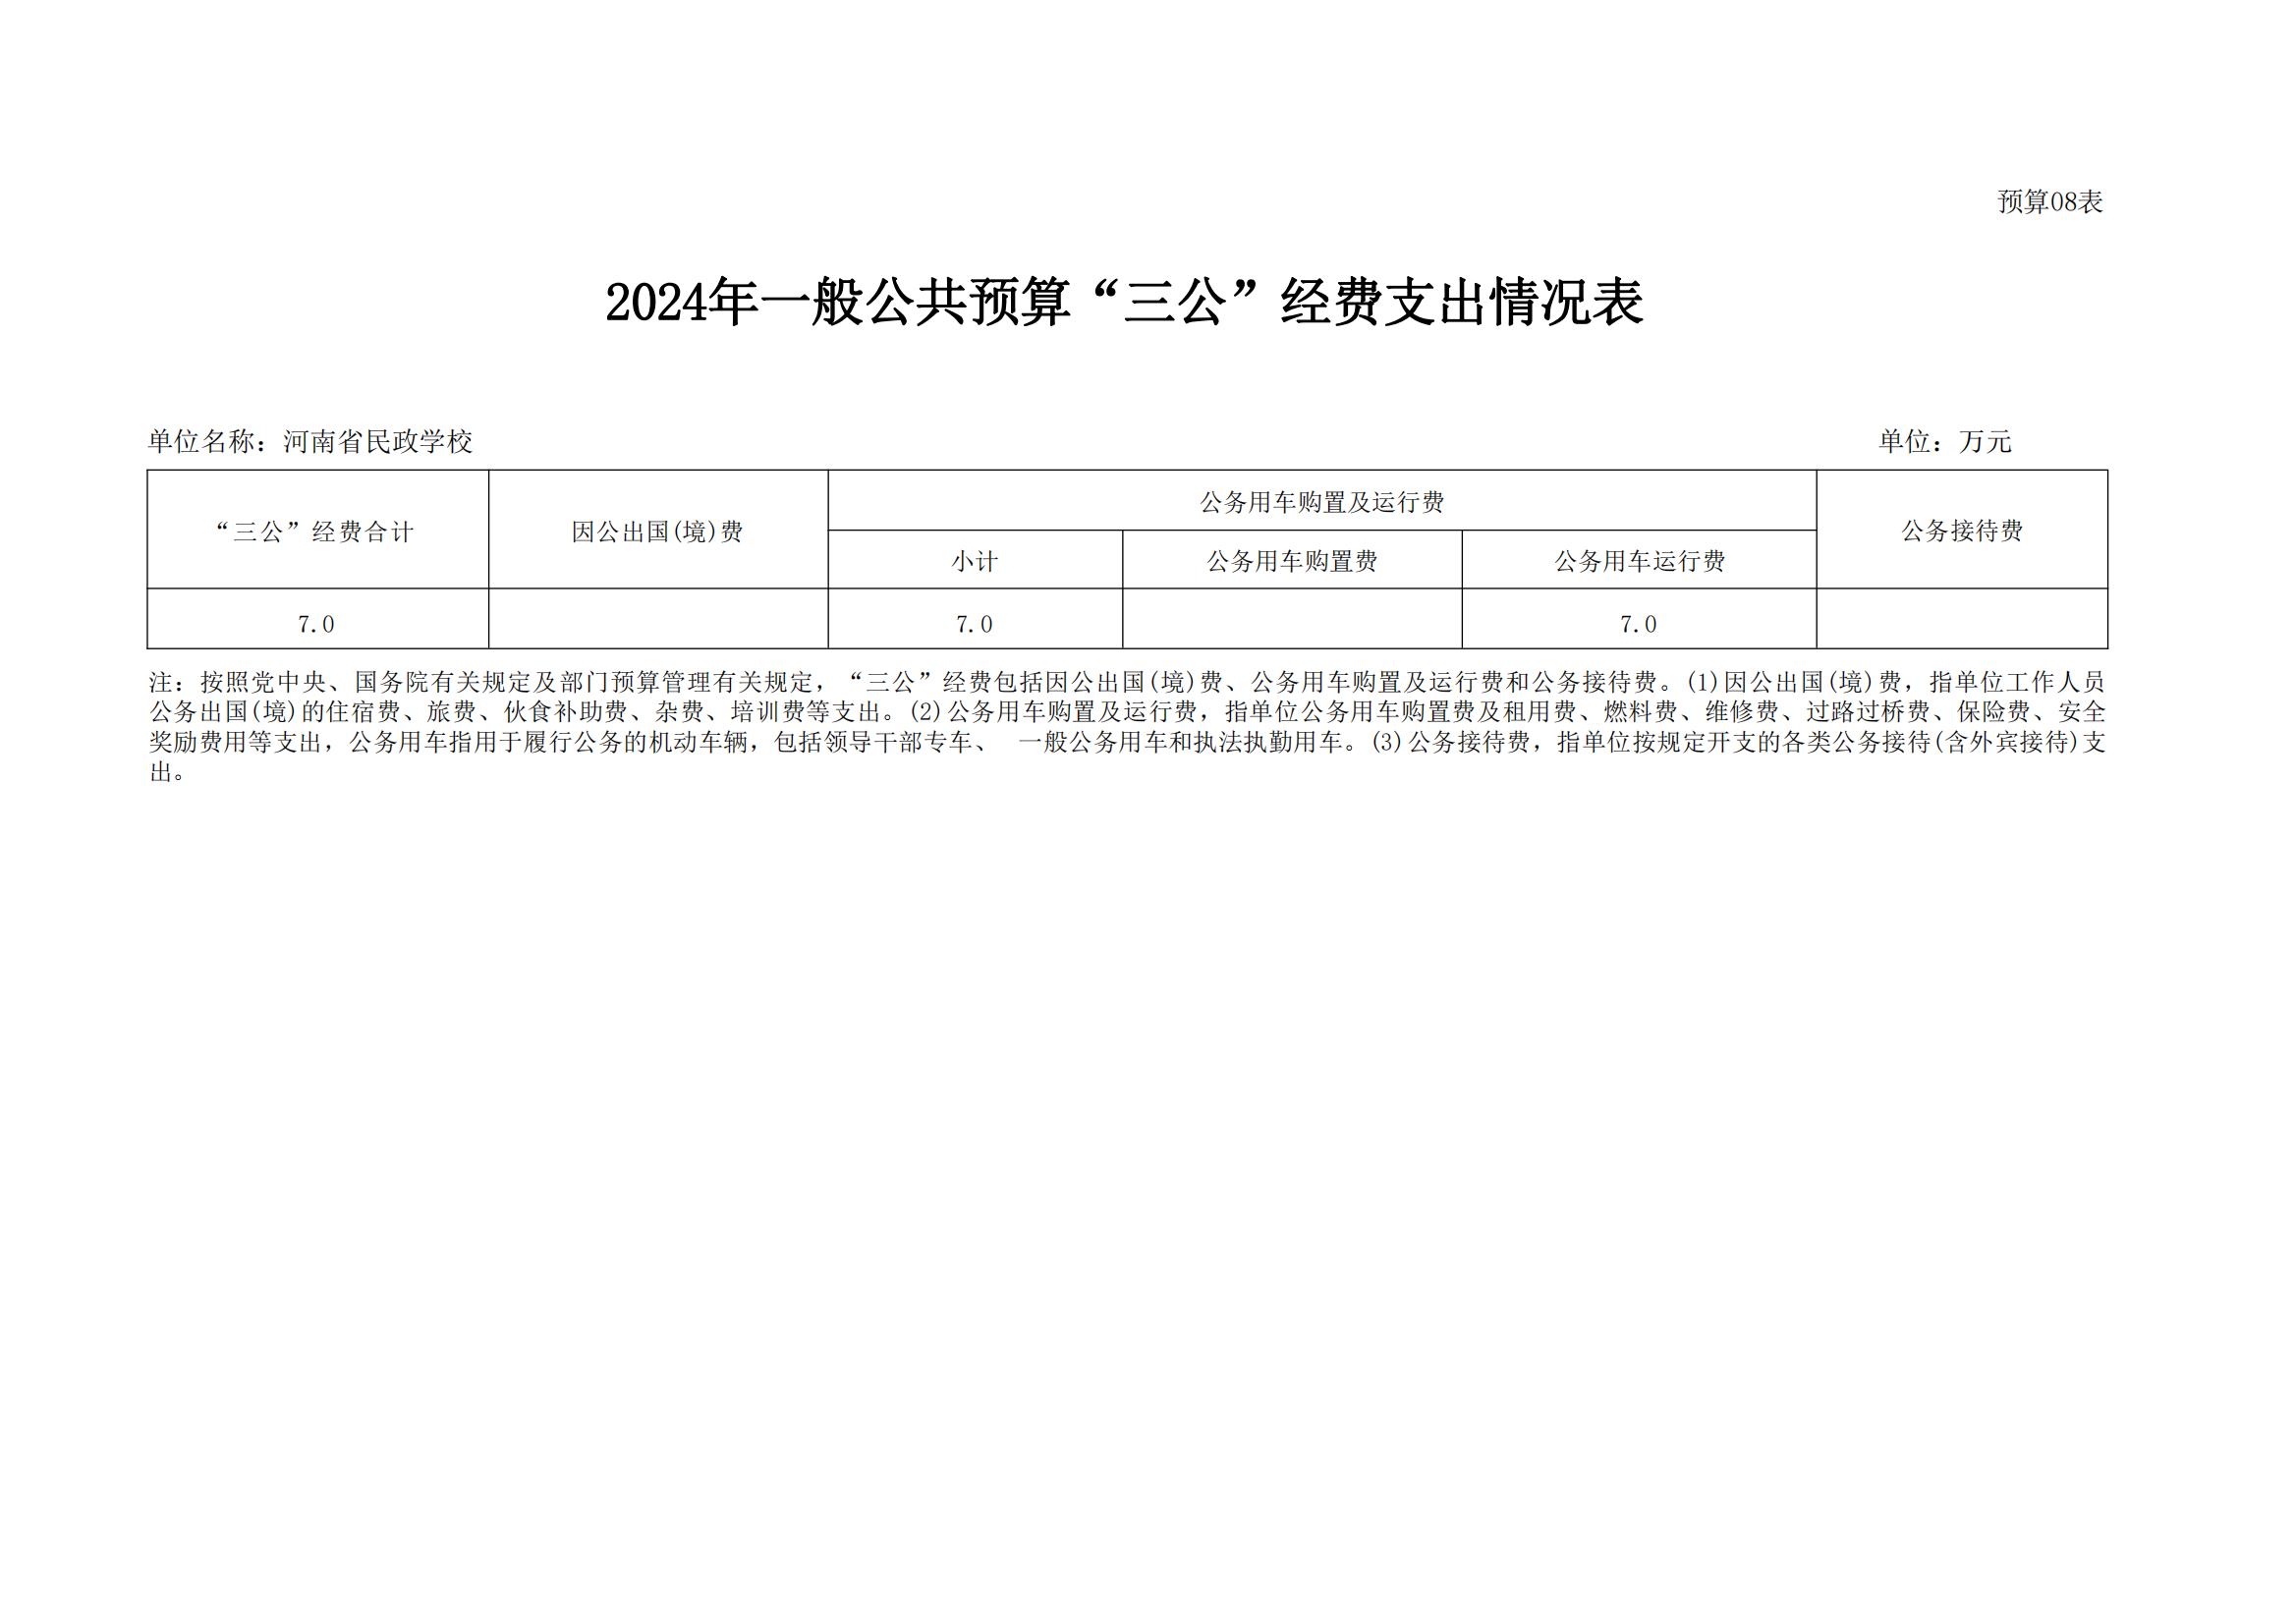 河南省民政学校2024年部门预算公开(1)_18.jpg